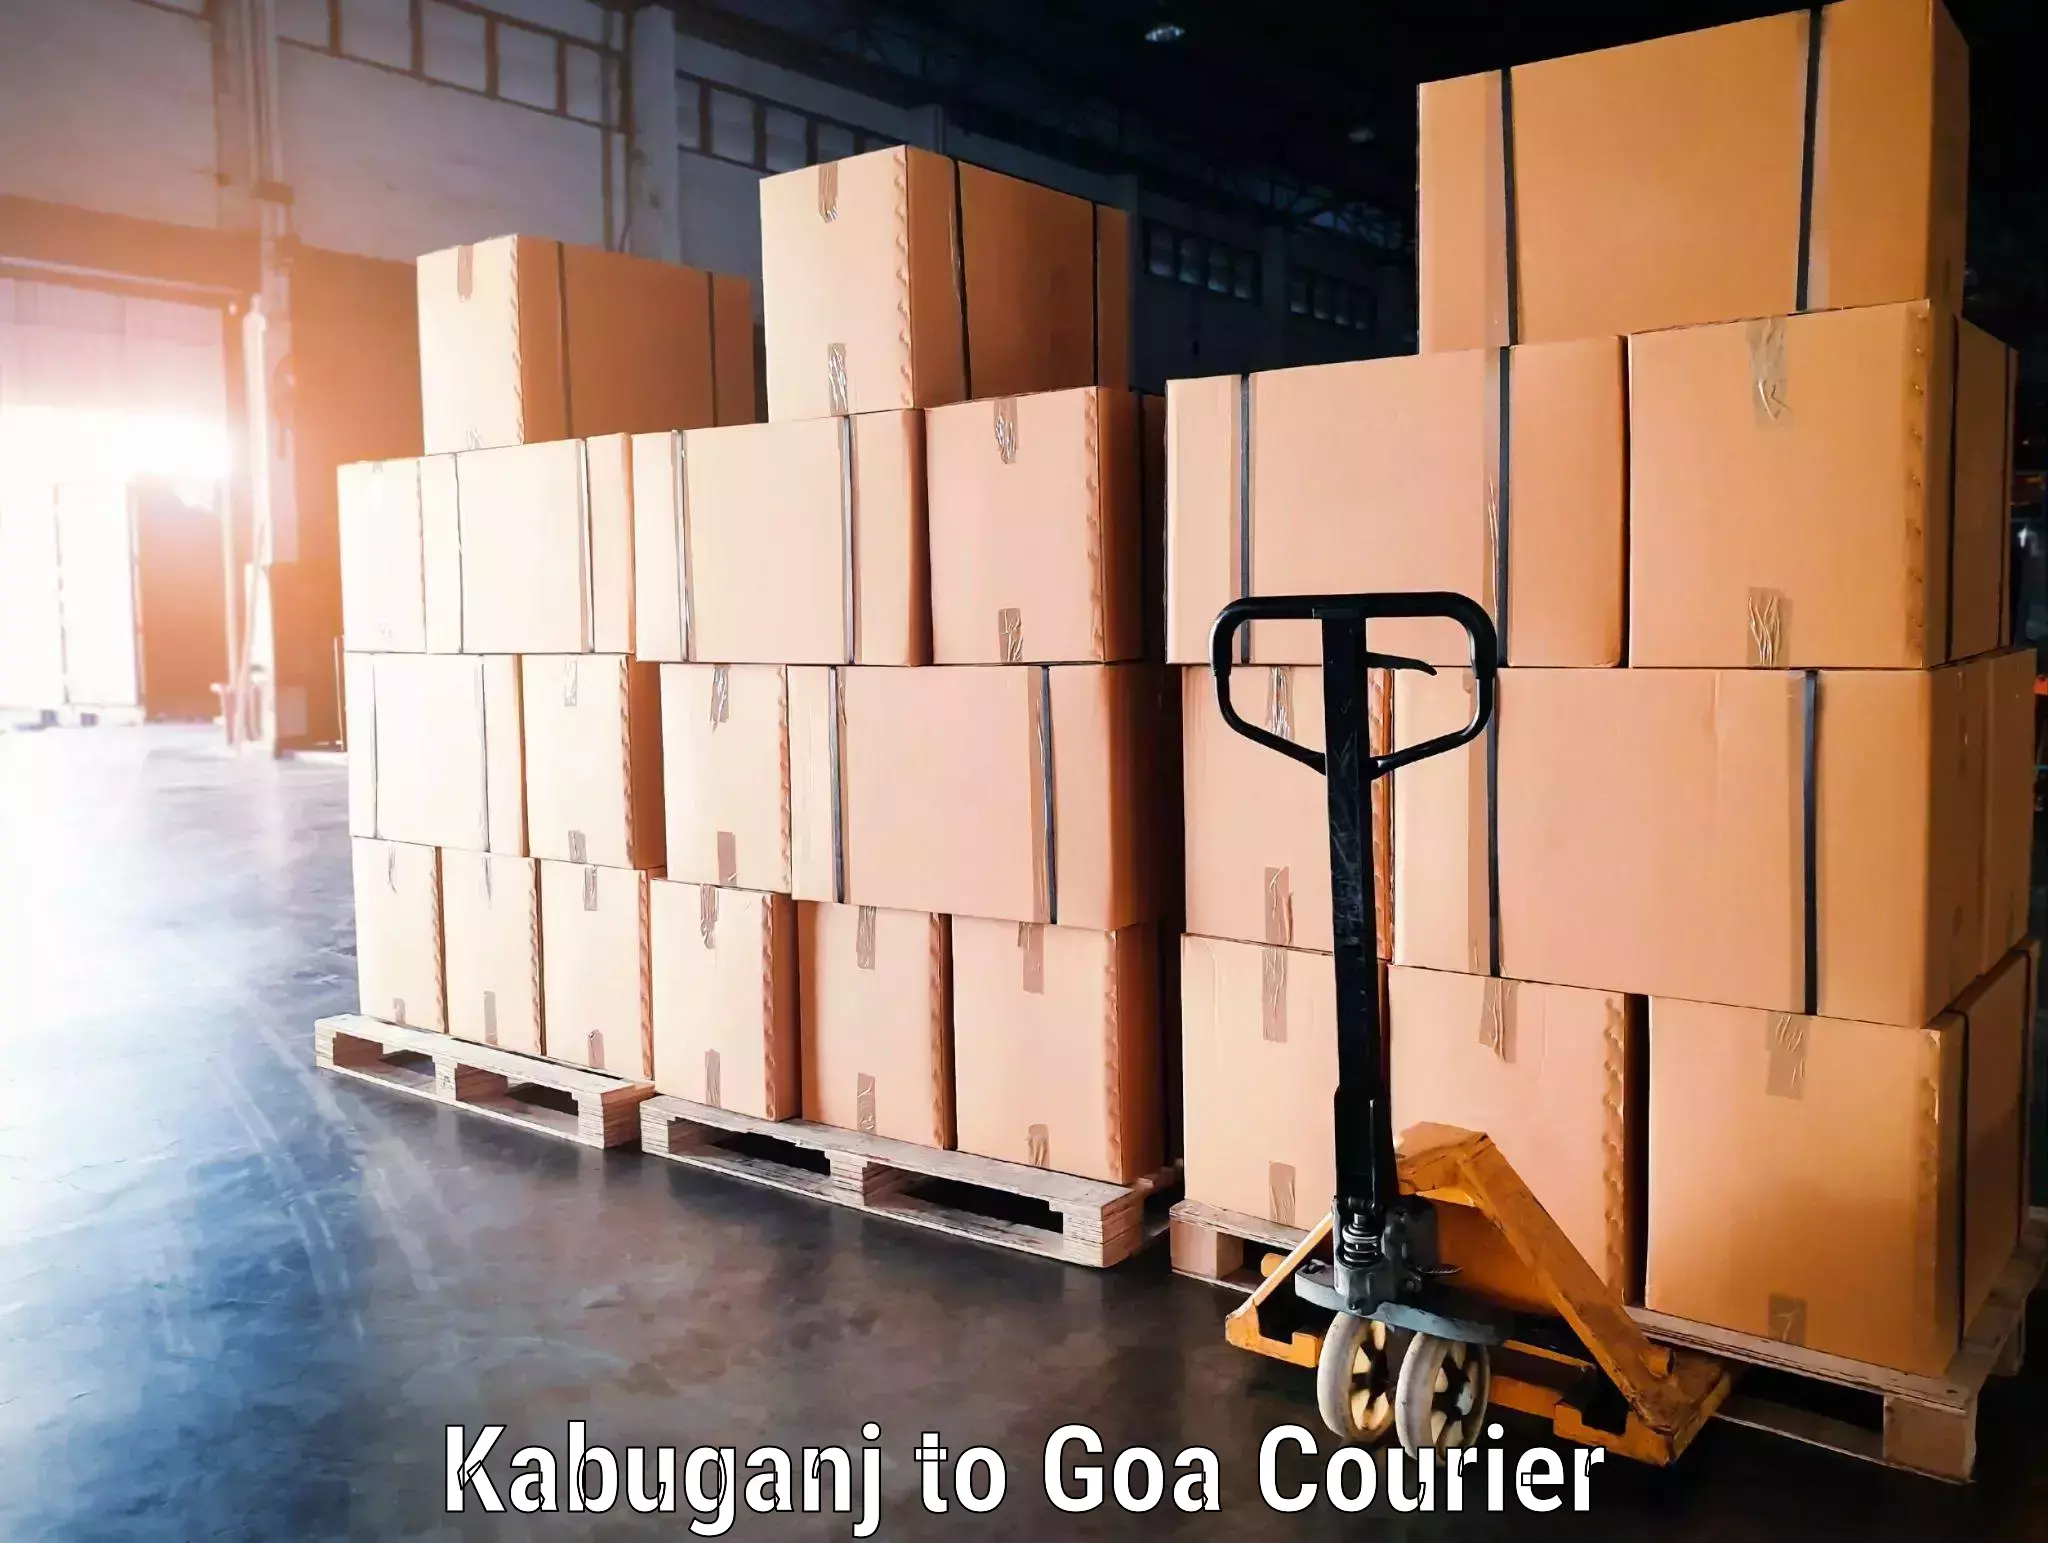 Doorstep luggage pickup Kabuganj to Goa